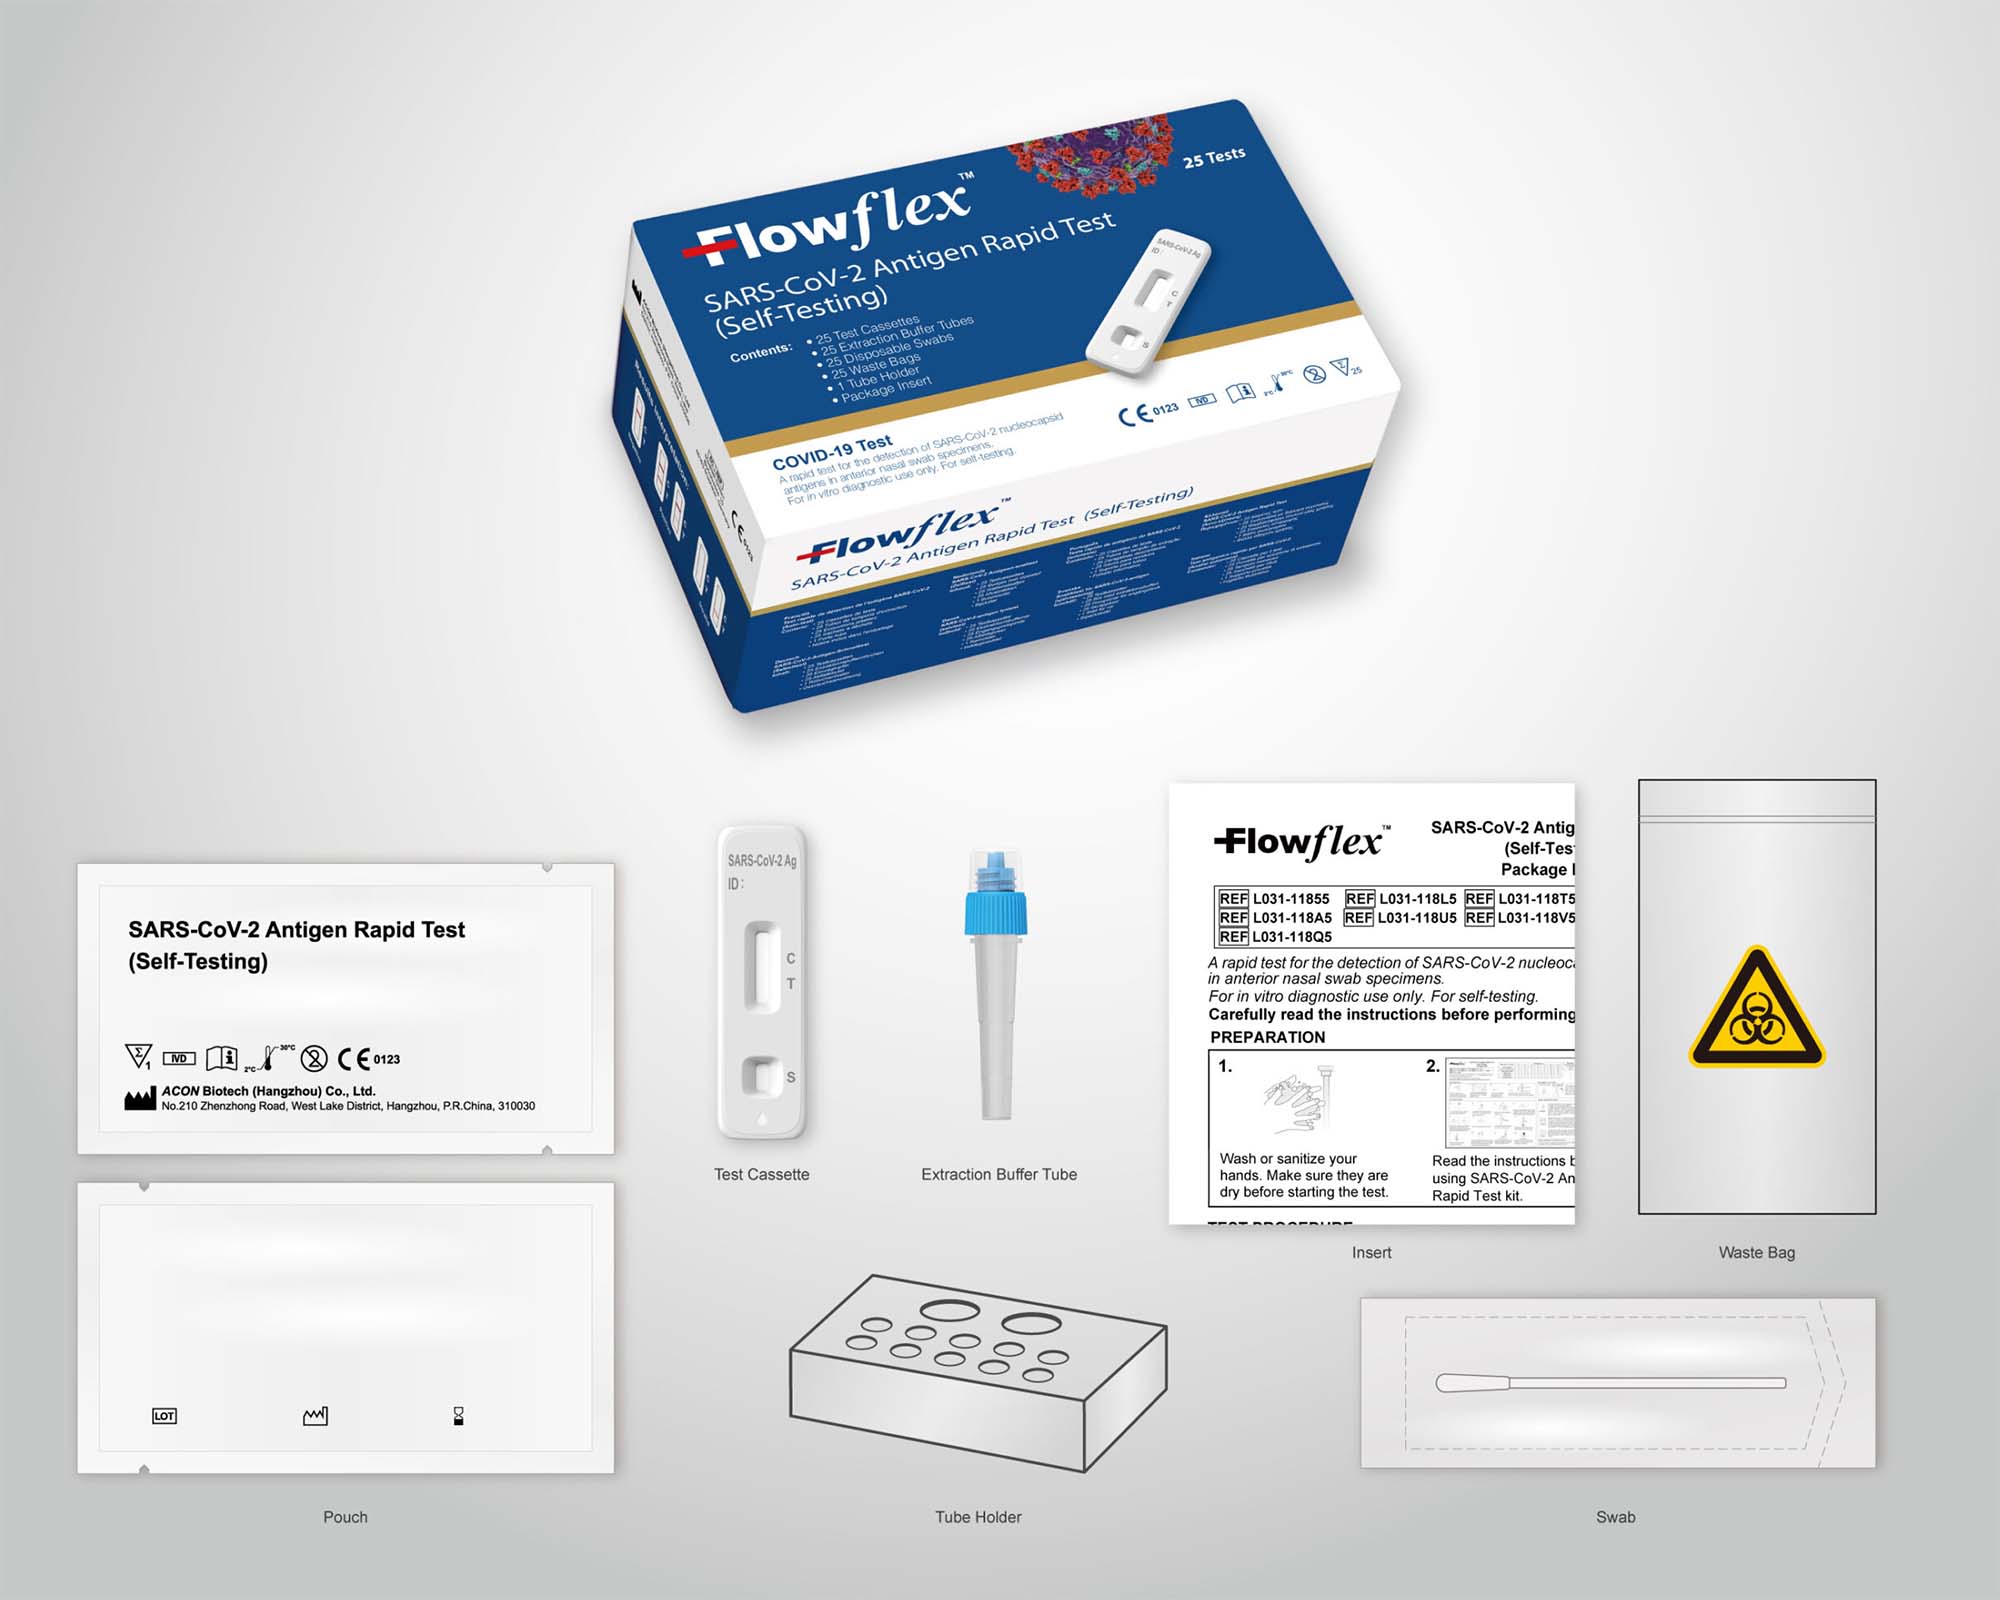 Acon Biotech Flowflex 25-Pack Antigen Lateral Flow Rapid Test Kit Image 2000px